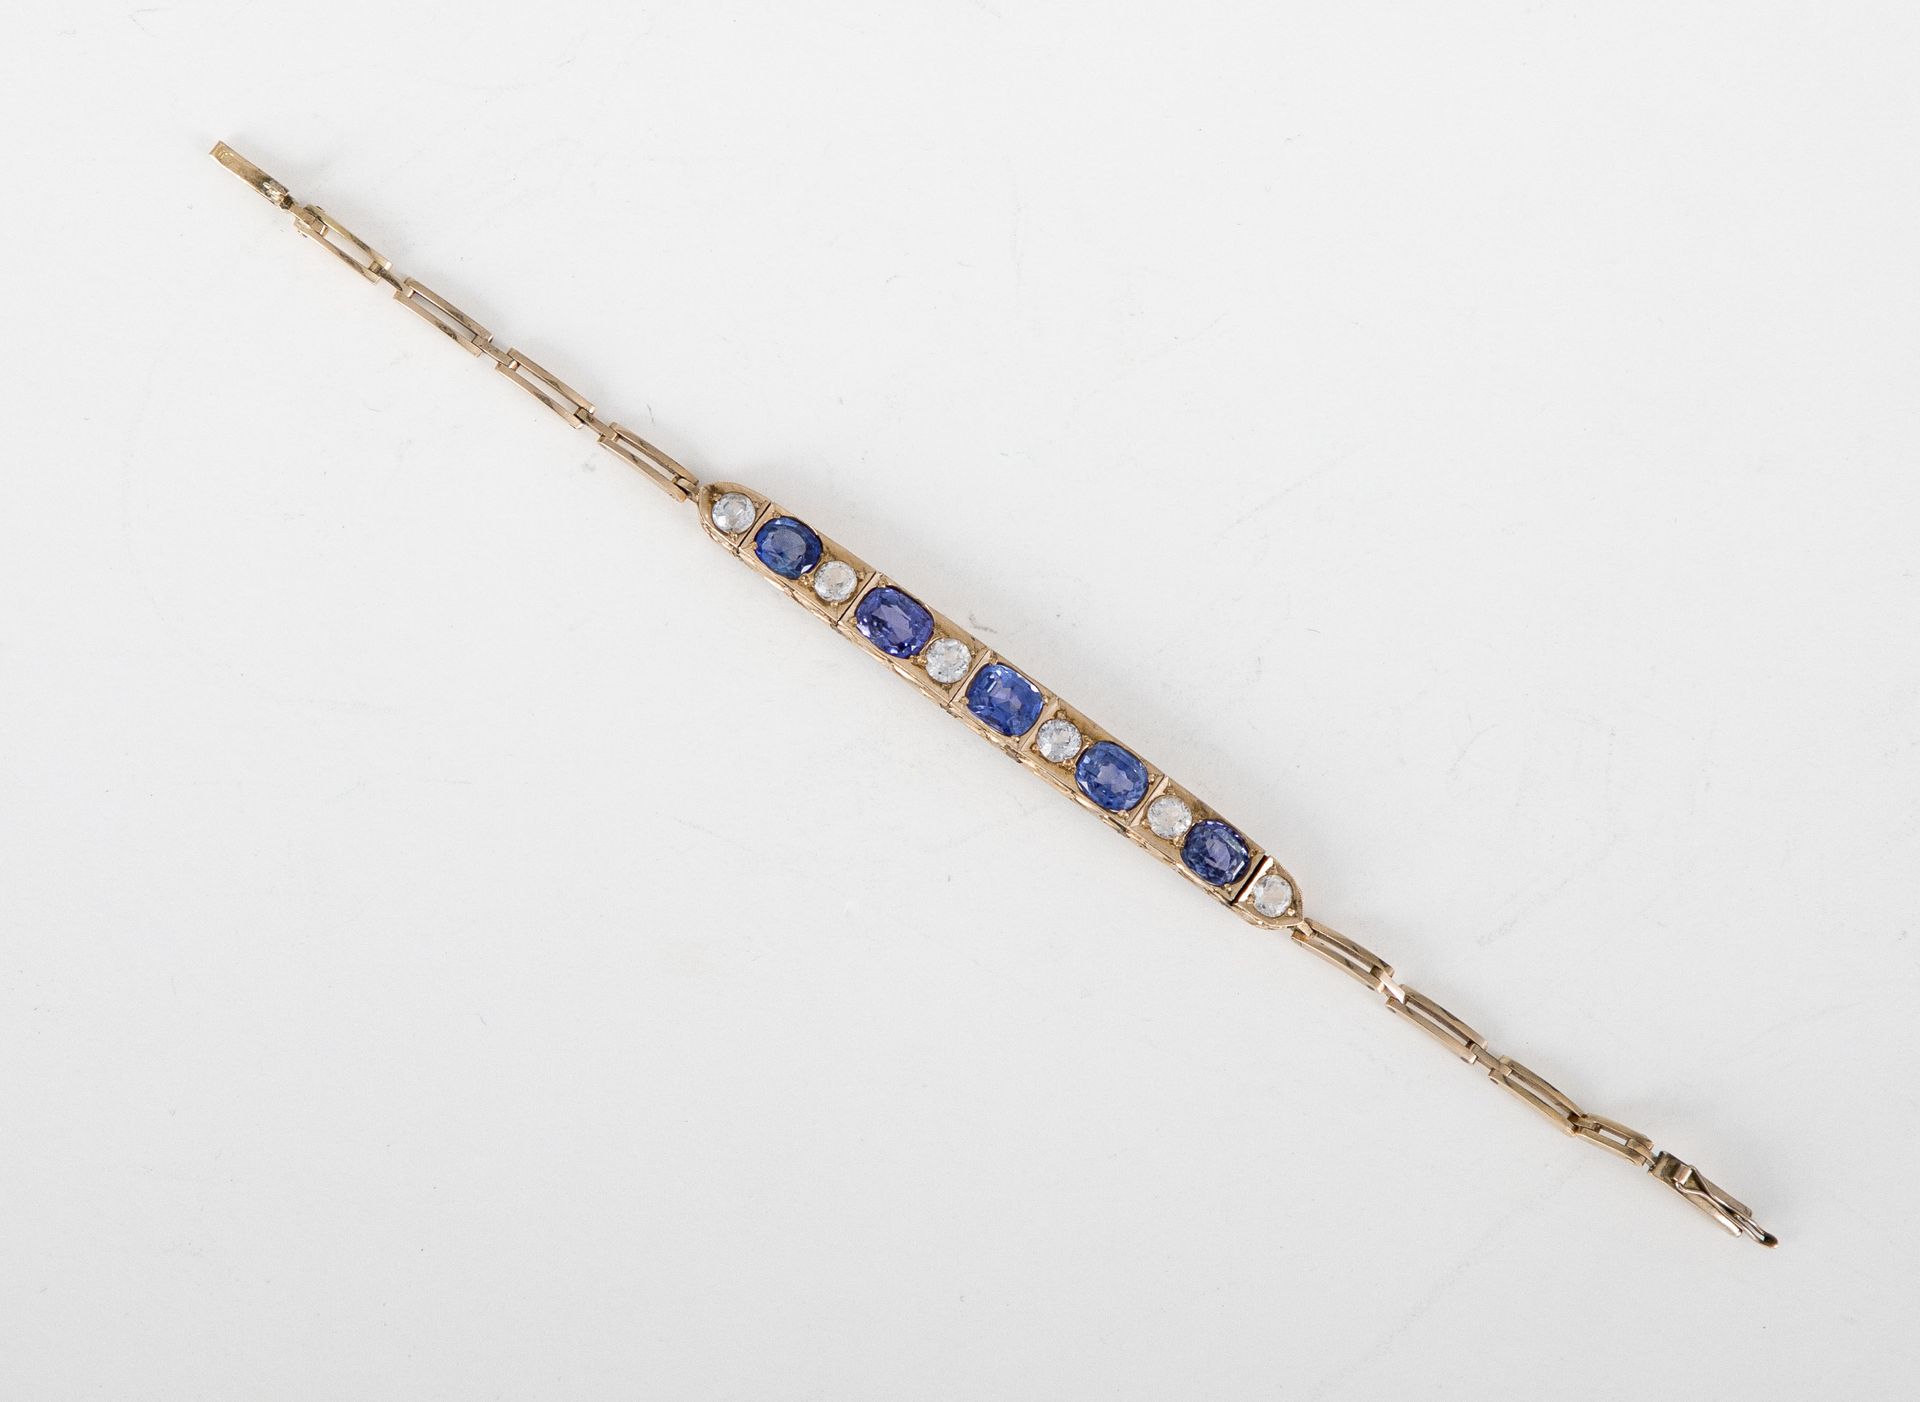 Null 14K (585)玫瑰金手镯，镶嵌有5颗椭圆形蓝宝石和白色托帕石。长度：15厘米左右。毛重：14克

镶嵌蓝宝石和黄宝石的手镯